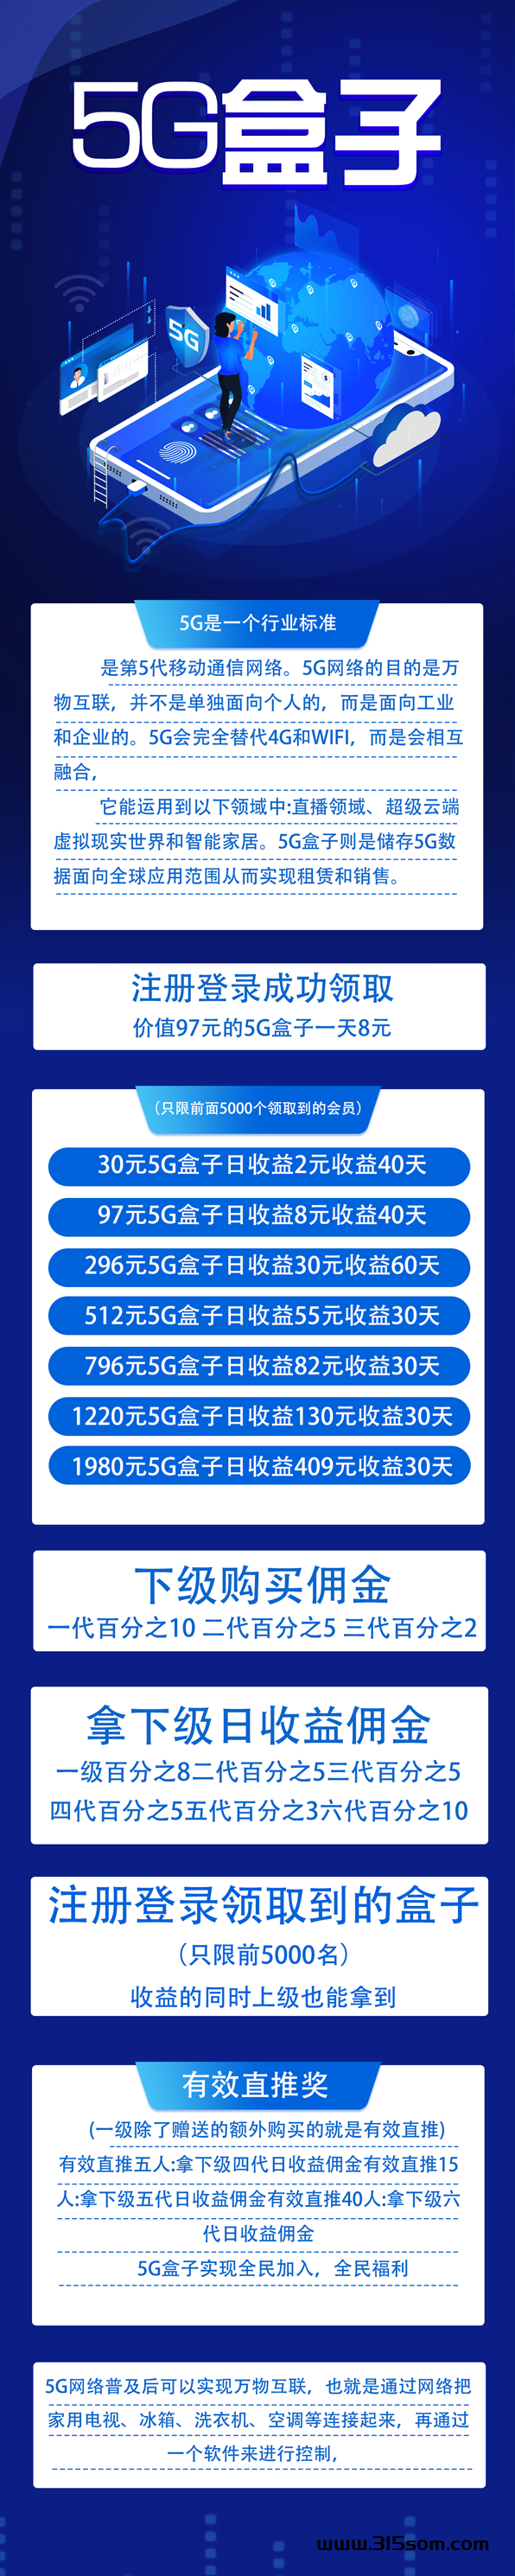 5G盒子 每天签到白领8元 30元提现秒到账 - 315首码项目网-315首码项目网